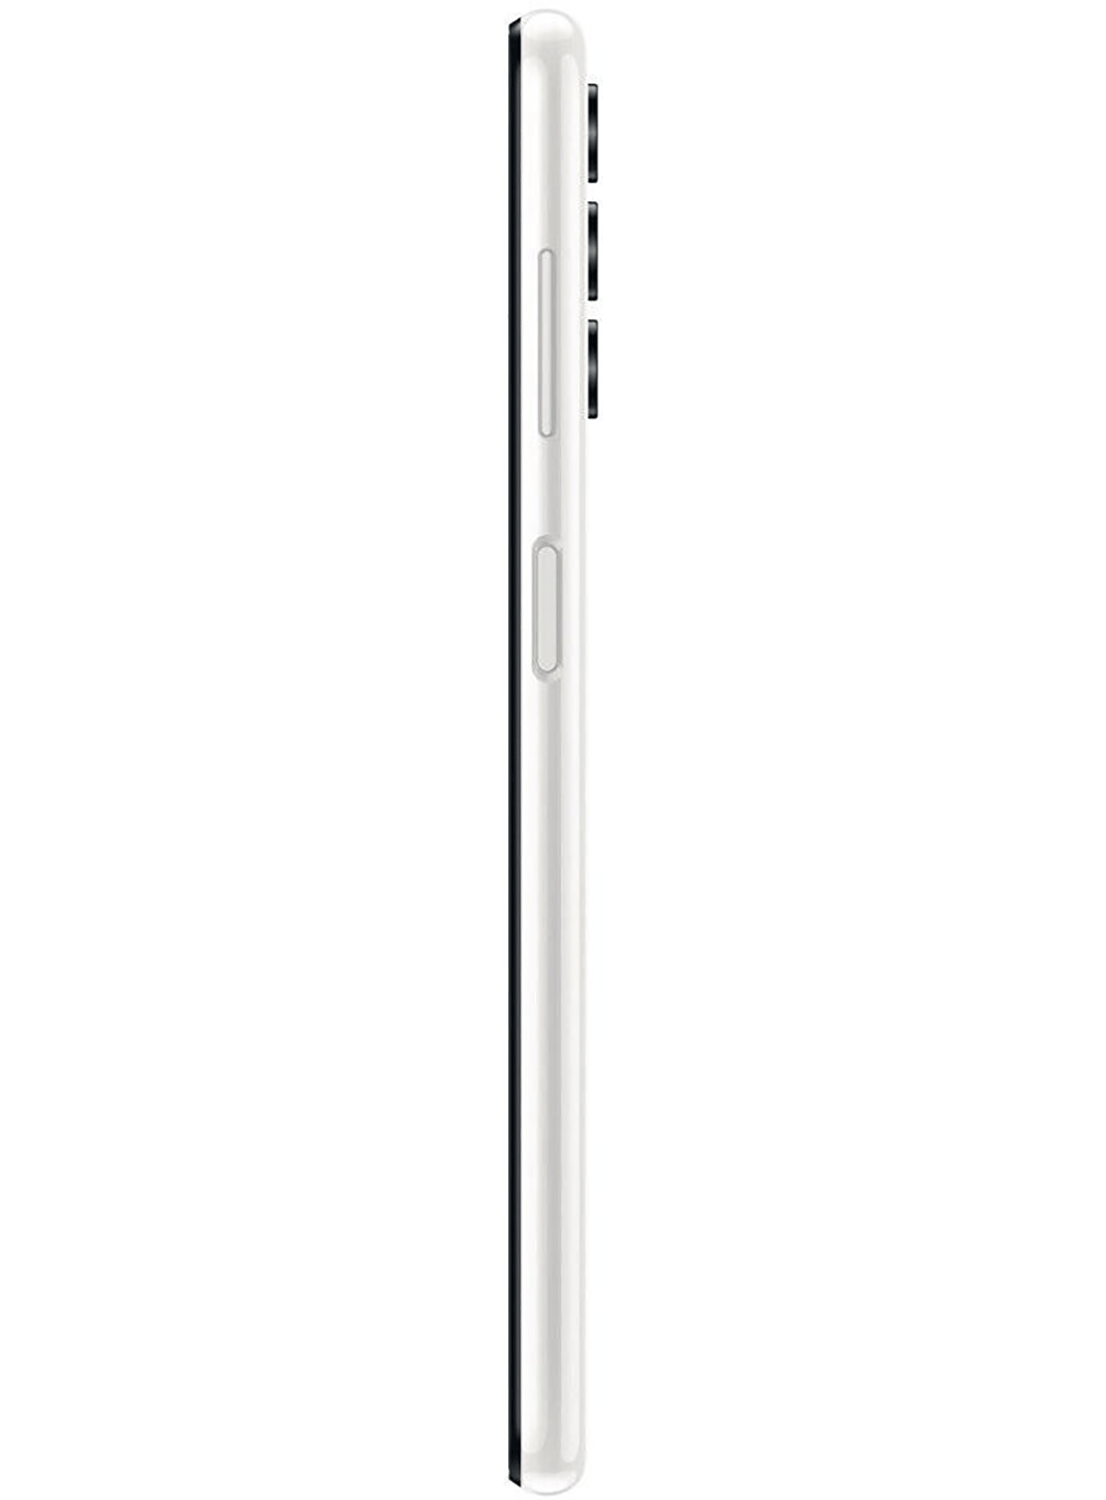 Samsung Galaxy A13 SM-A135F/DS